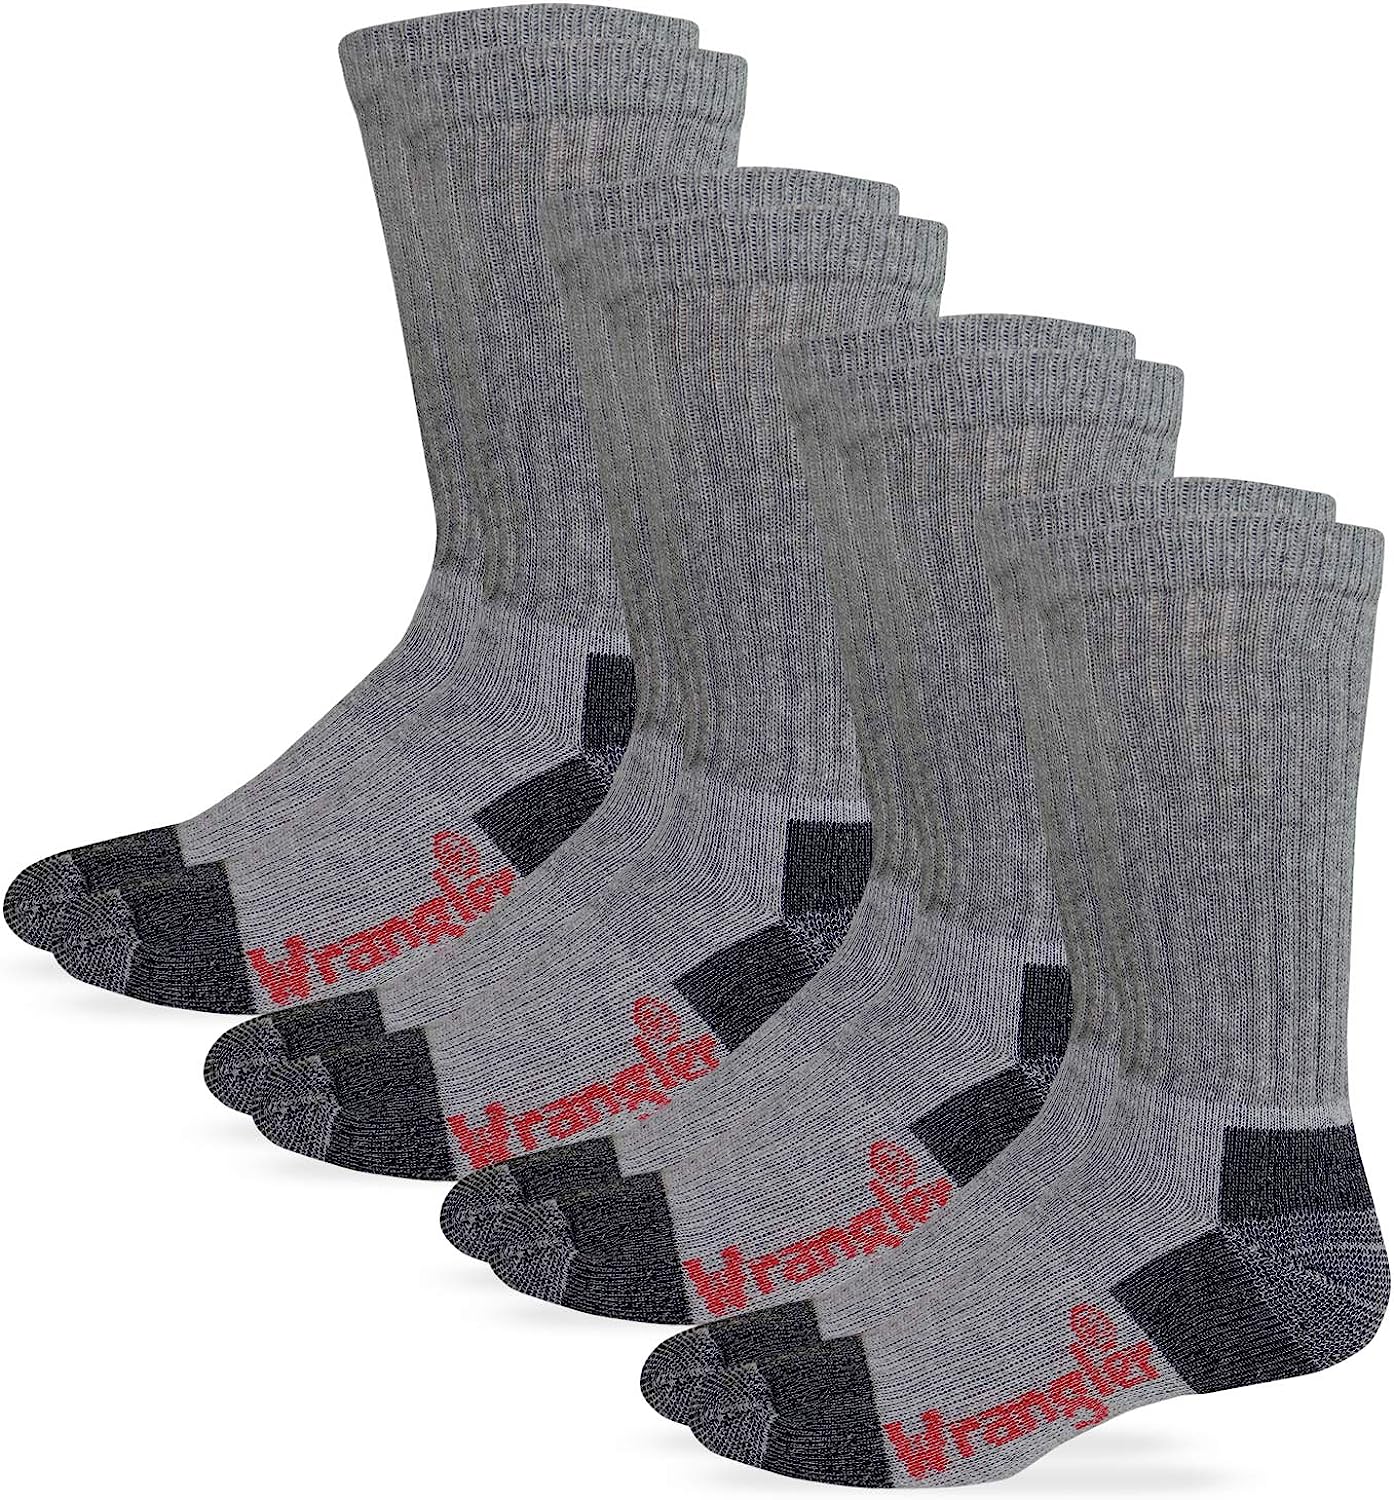 Wrangler Men's Steel Toe Boot Work Crew Cotton Cushion Socks